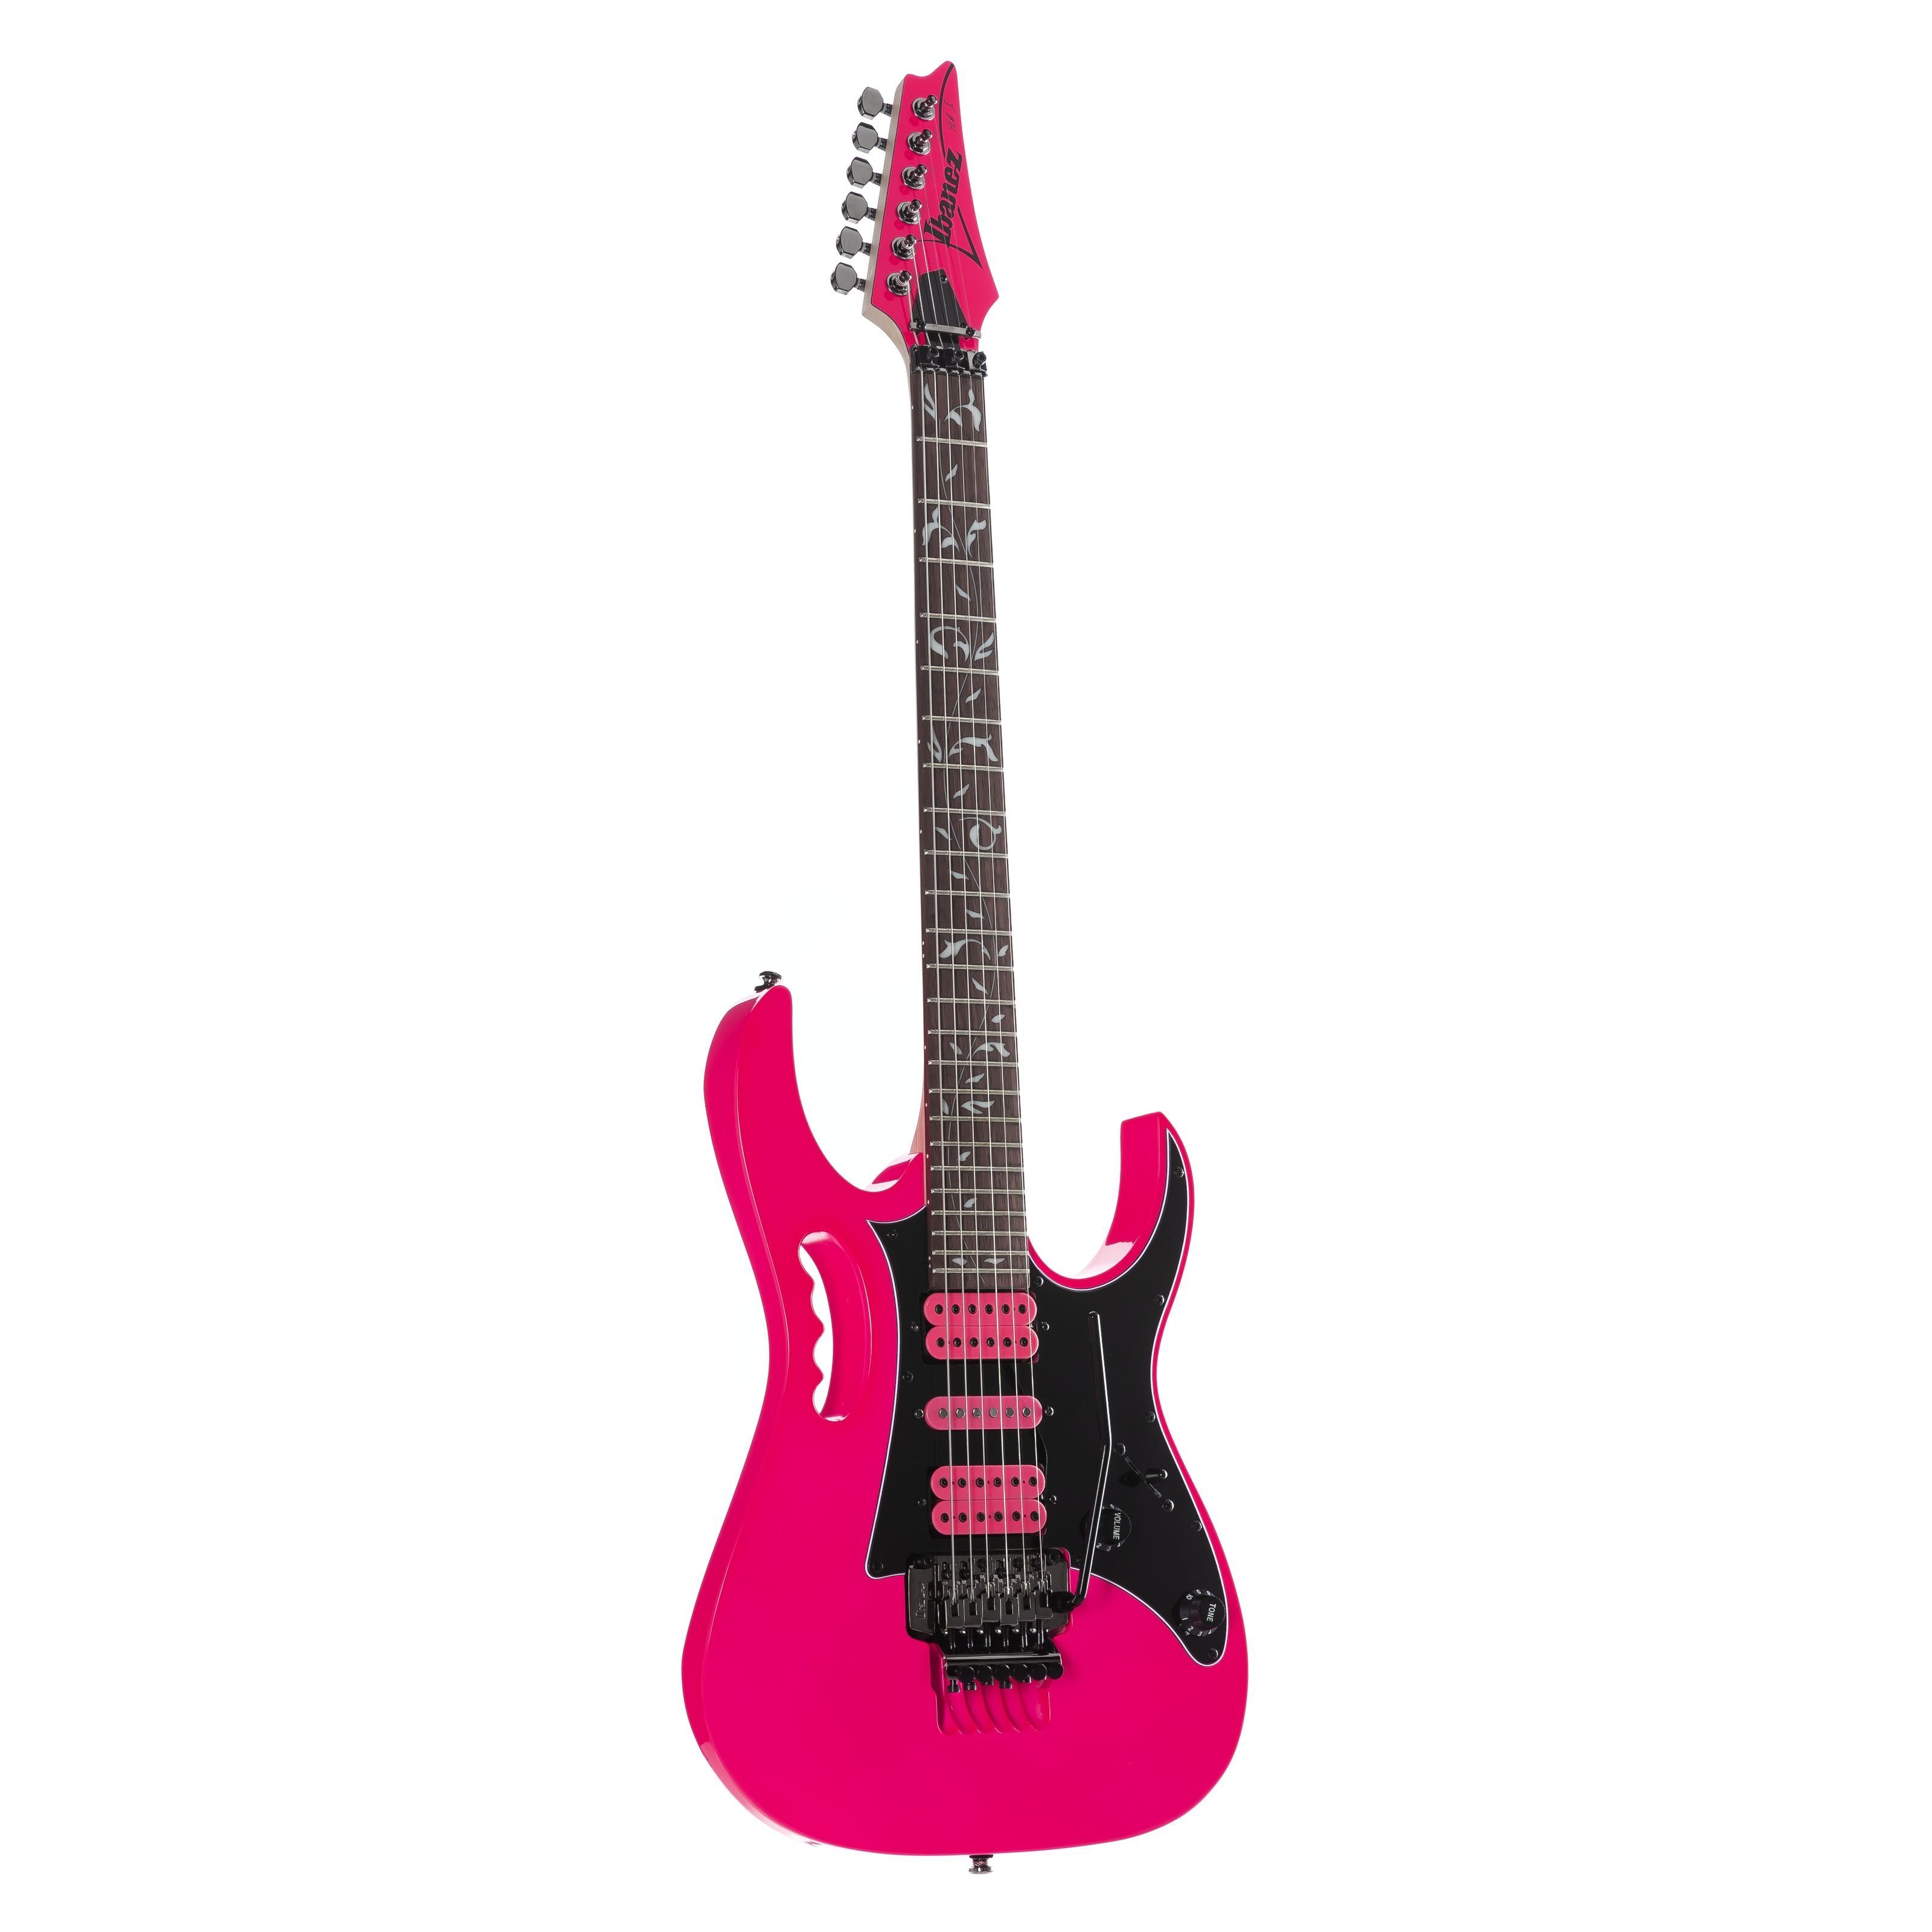 Ibanez E-Gitarre, JEMJRSP-PK Steve Vai Jem Jr. Pink, JEMJRSP-PK Steve Vai Jem Jr. Pink - E-Gitarre